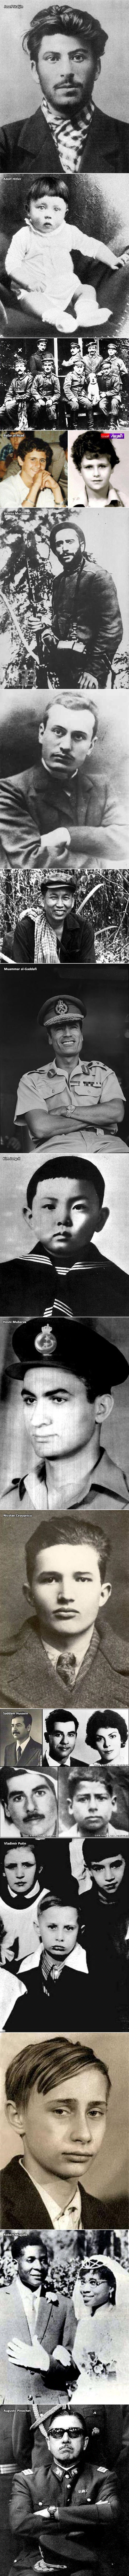 LICA ZLA: Dječje fotke najbrutalnijih diktatora svijeta